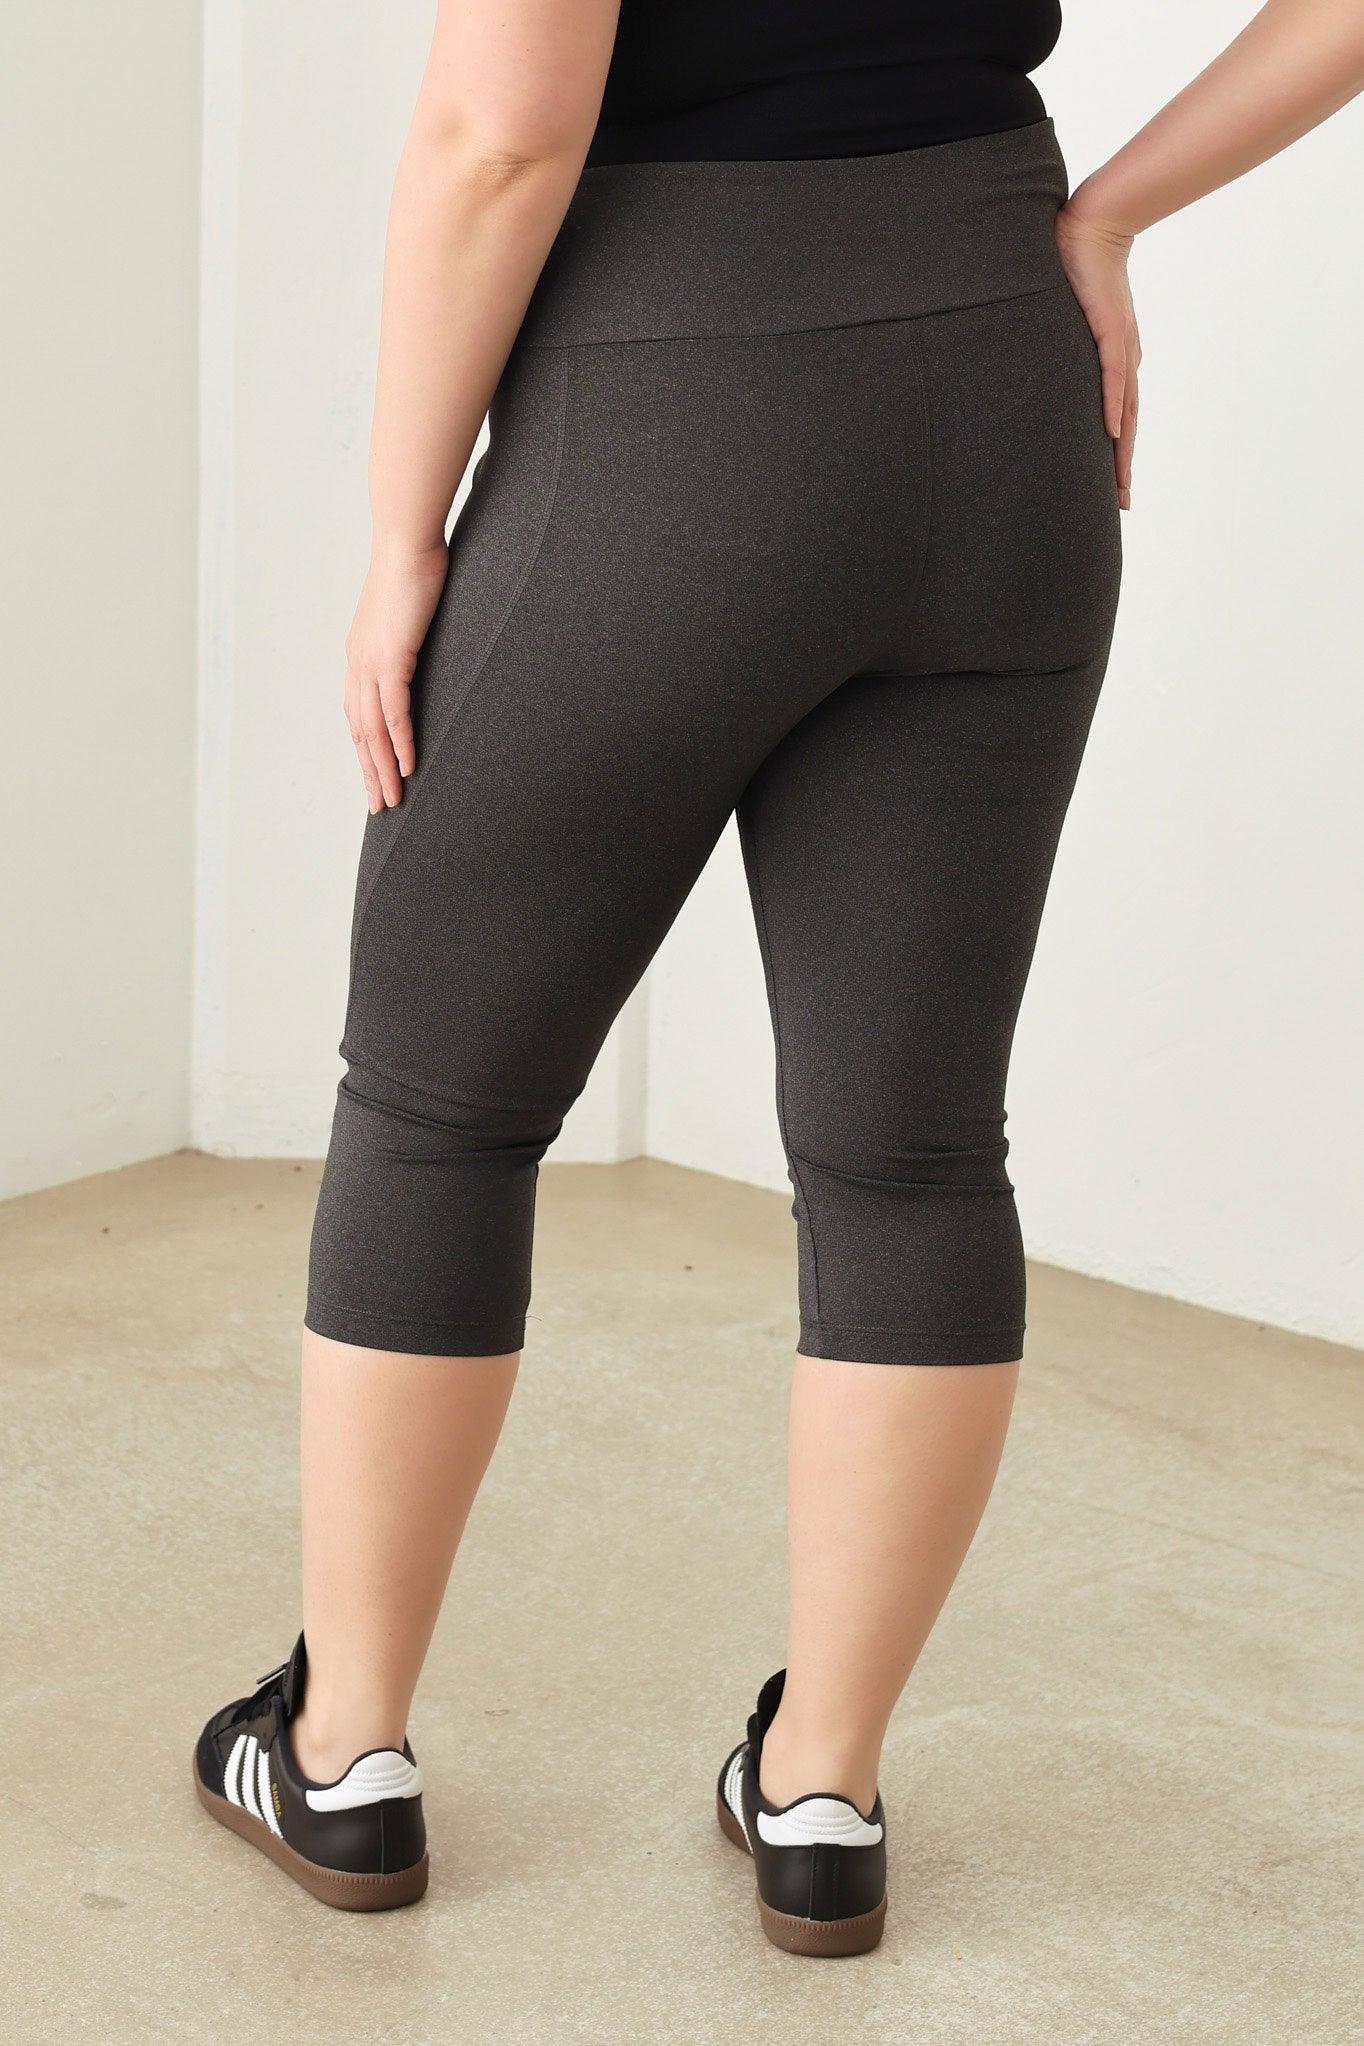 Wholesale Plus Size Capri Yoga Leggings Pants